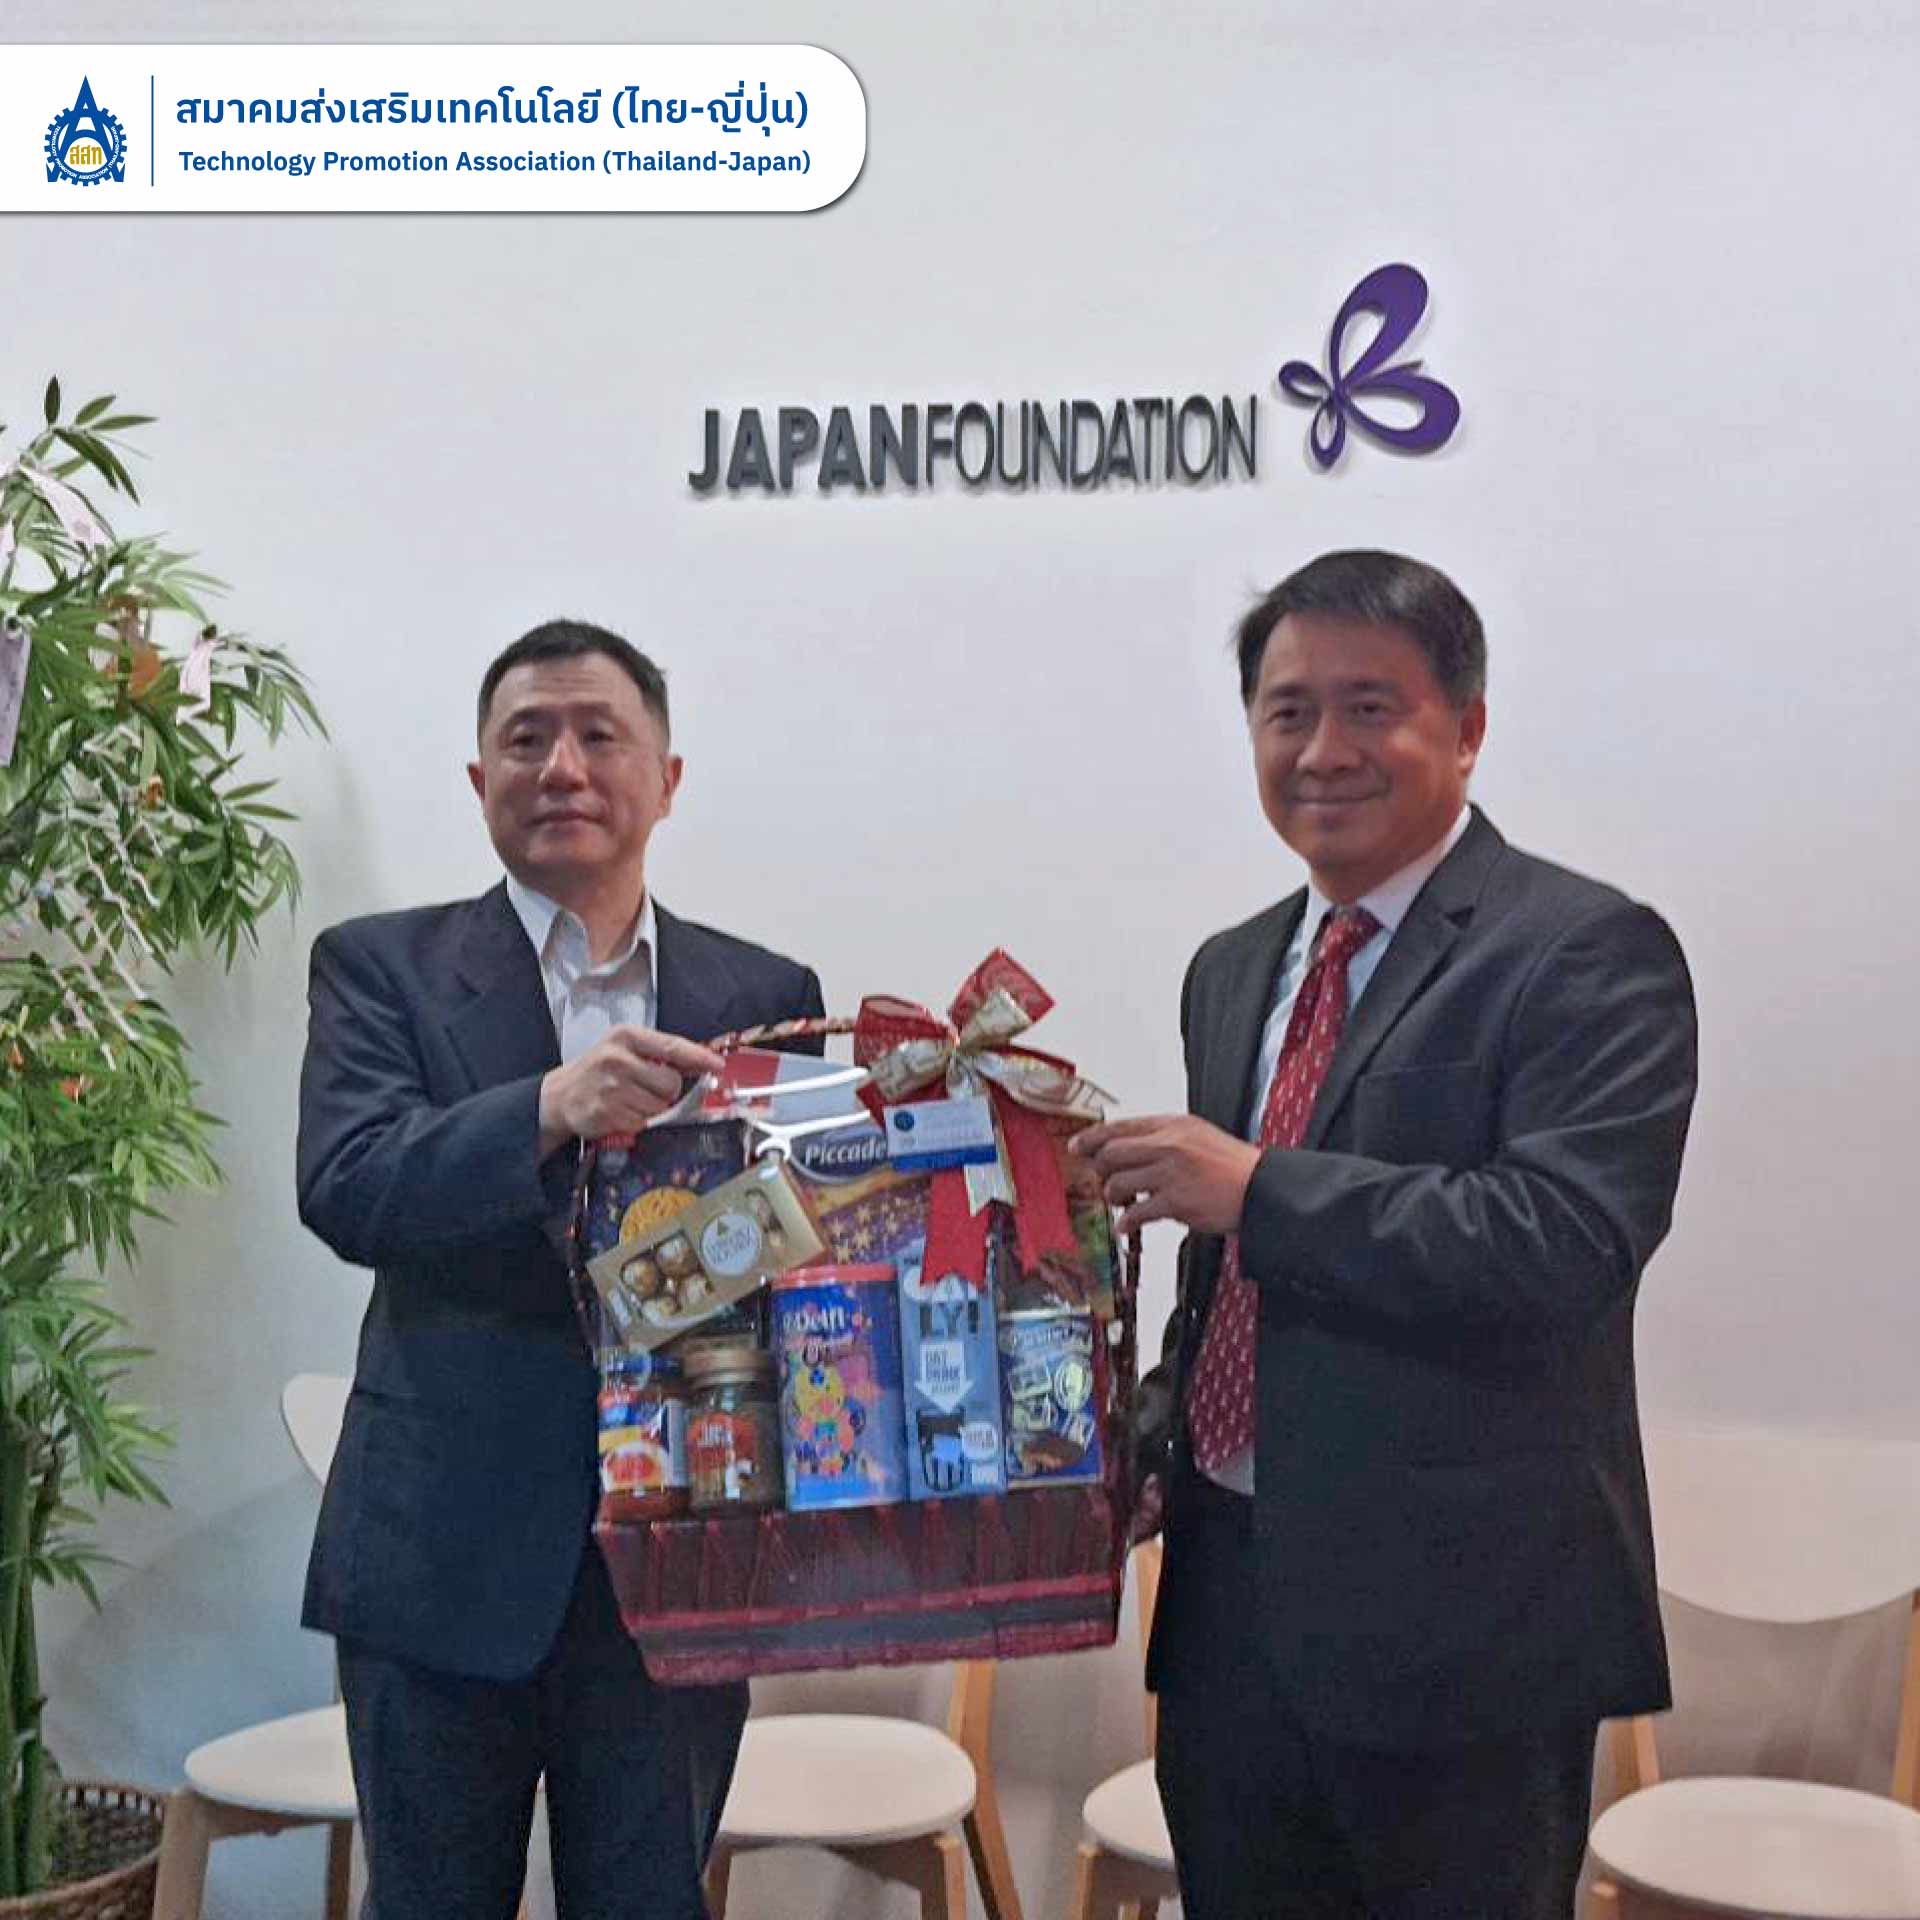 ดร. สุพจน์ ชินวีระพันธุ์ ผู้อำนวยการสมาคม เข้าพบ Mr Kuriyama Masayuki Director General, The Japan Foundation, Bangkok เนื่องในโอกาสเทศกาลปีใหม่